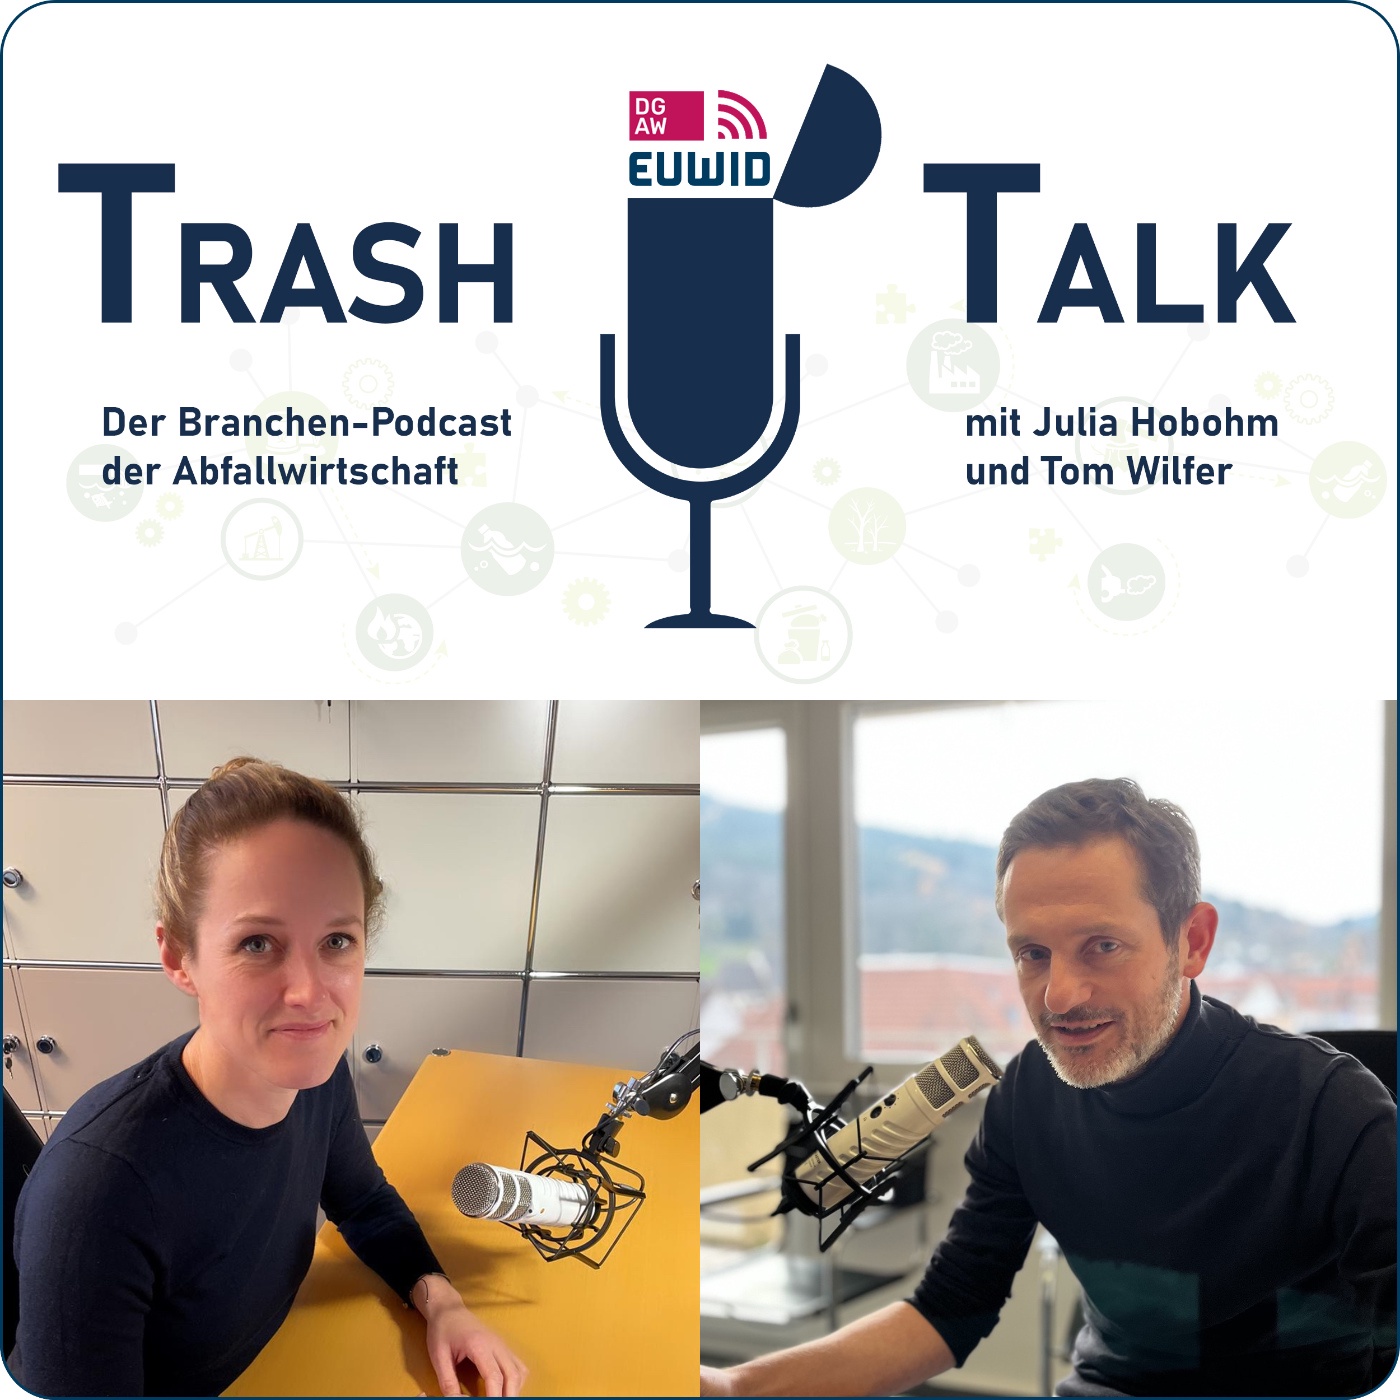 TrashTalk - Der Branchenpodcast der Abfallwirtschaft